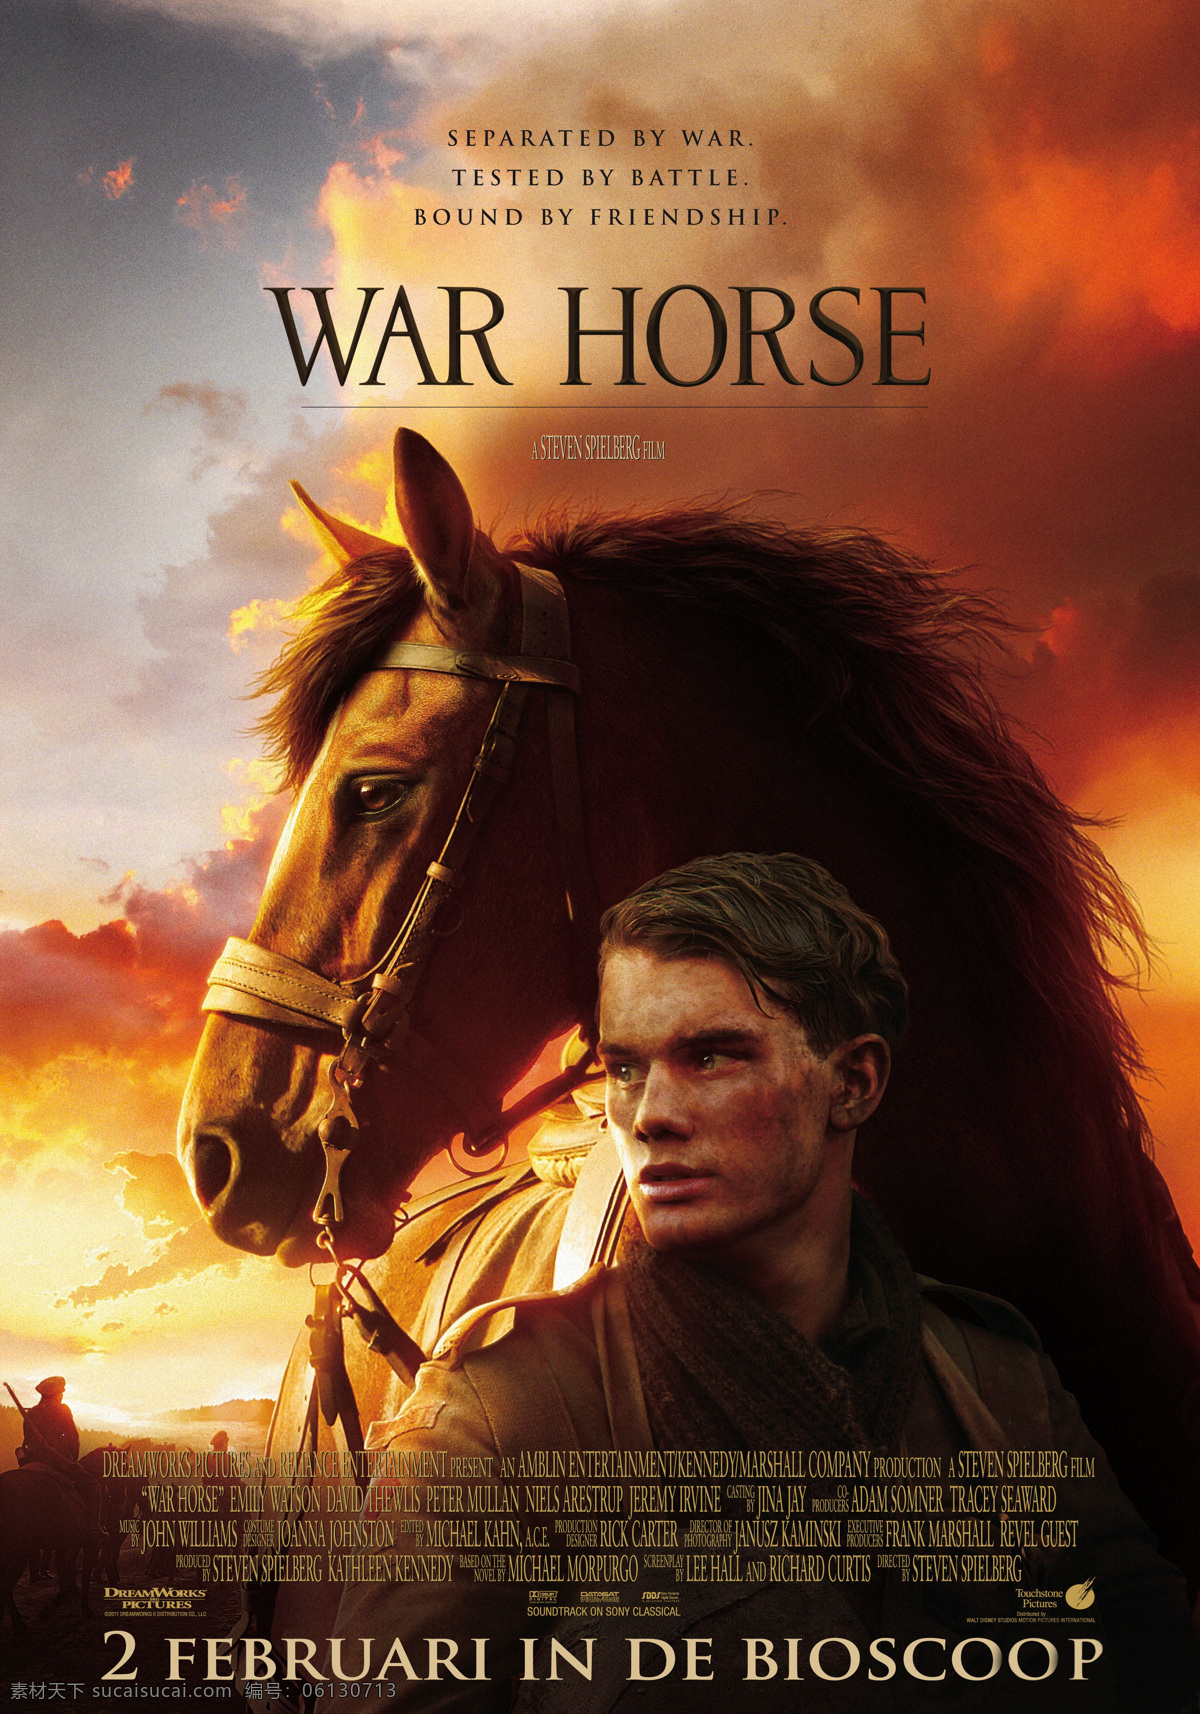 战马电影海报 战马 war horse 电影宣传海报 3d电影 文化艺术 影视娱乐 最新电影海报 电影海报